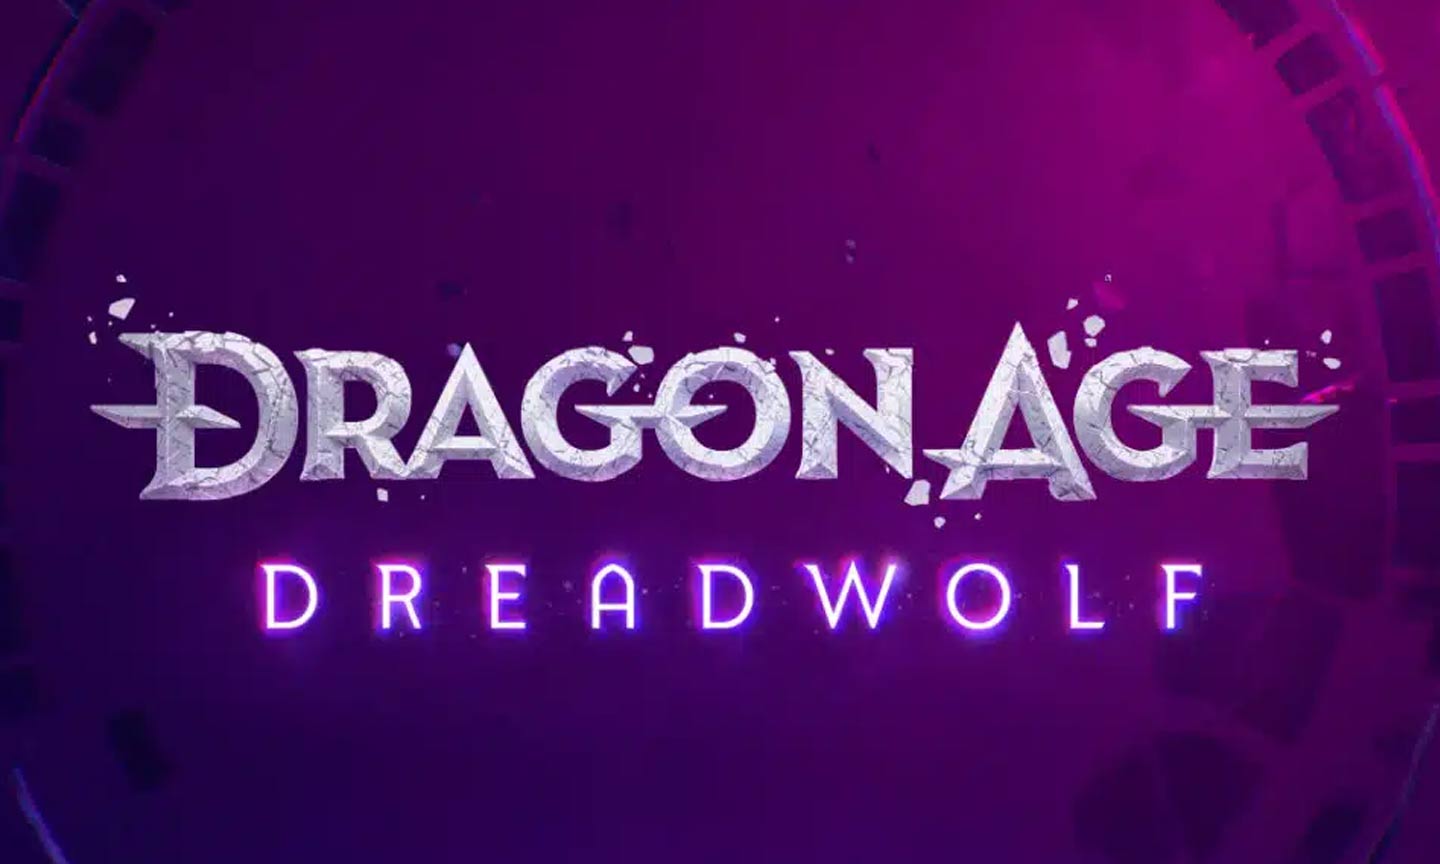 Dragon Age Dreadwolf - (C) BioWare/EA